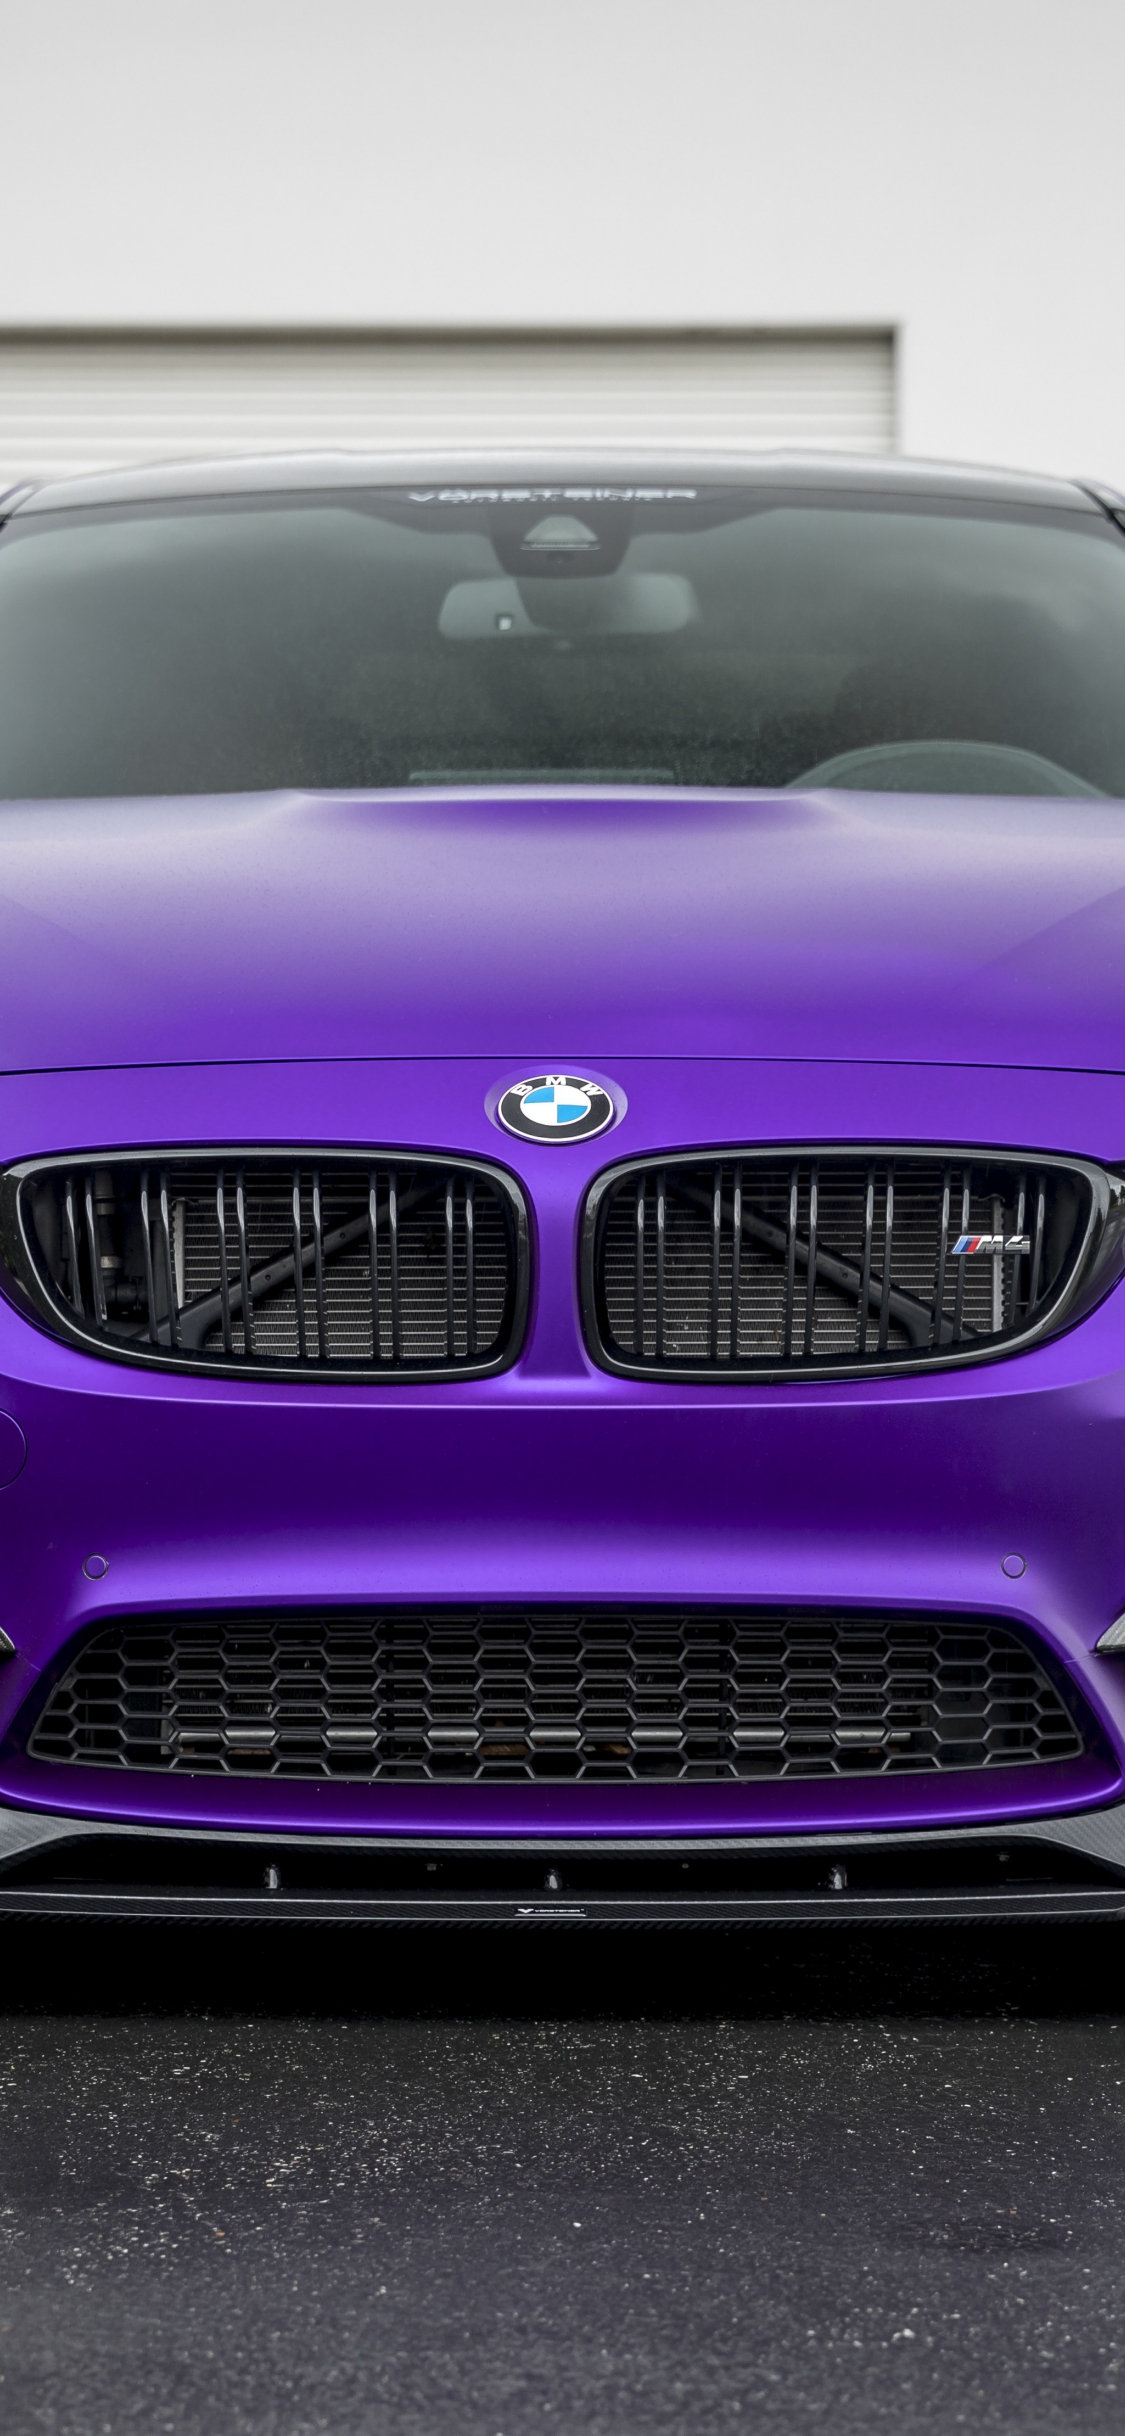 Download vorsteiner bmw m4, purple, car 1125x2436 wallpaper, iphone x, 1125x2436 hd image, background, 4787